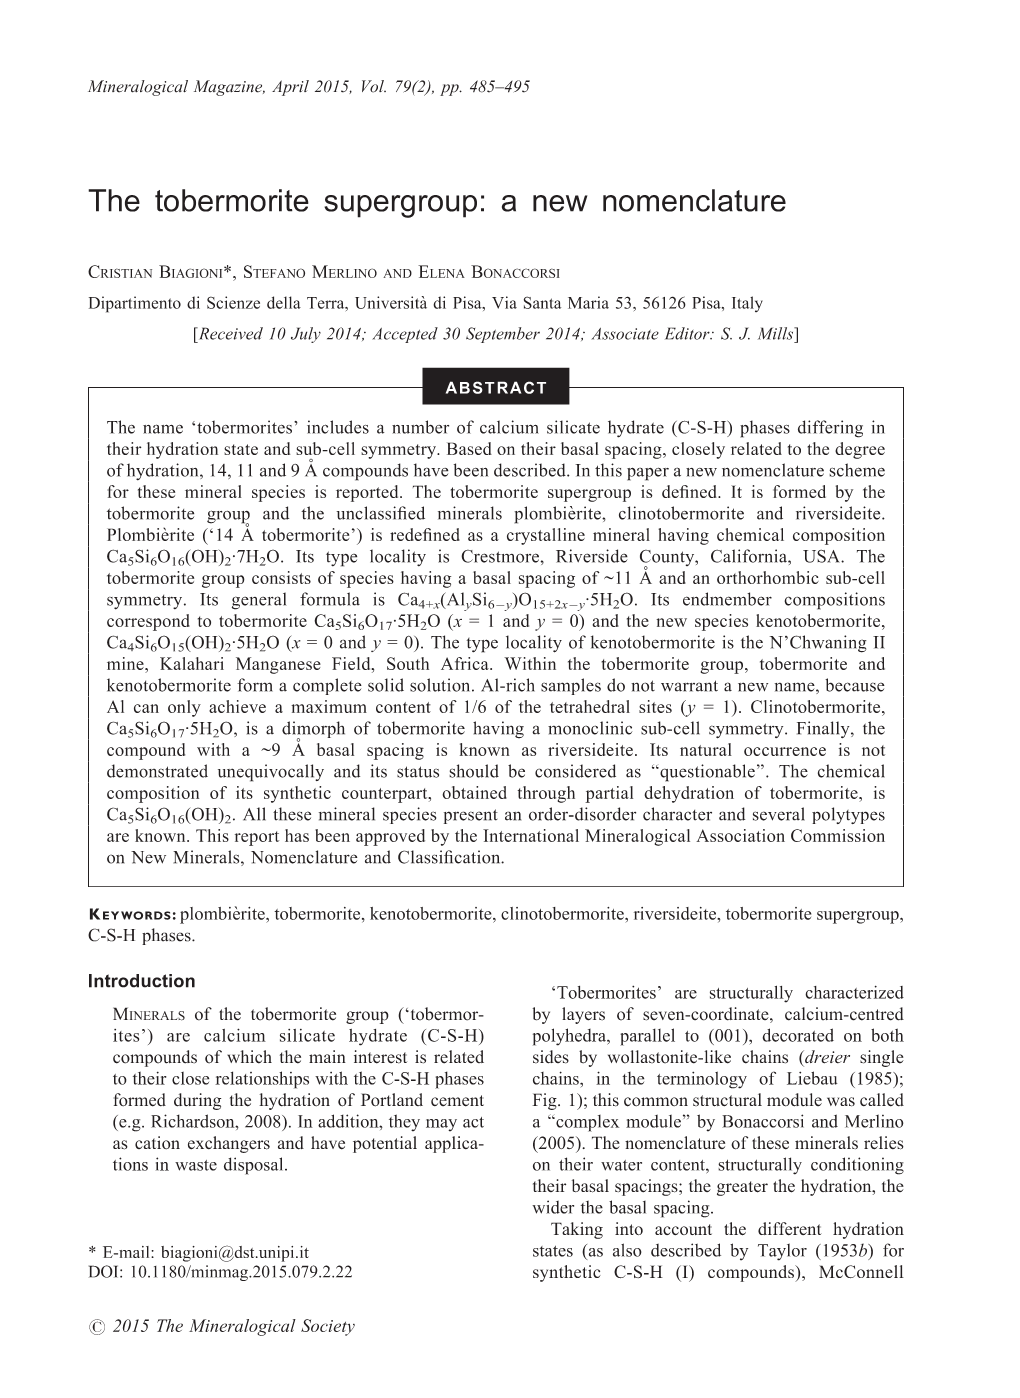 Tobermorite Supergroup: a New Nomenclature